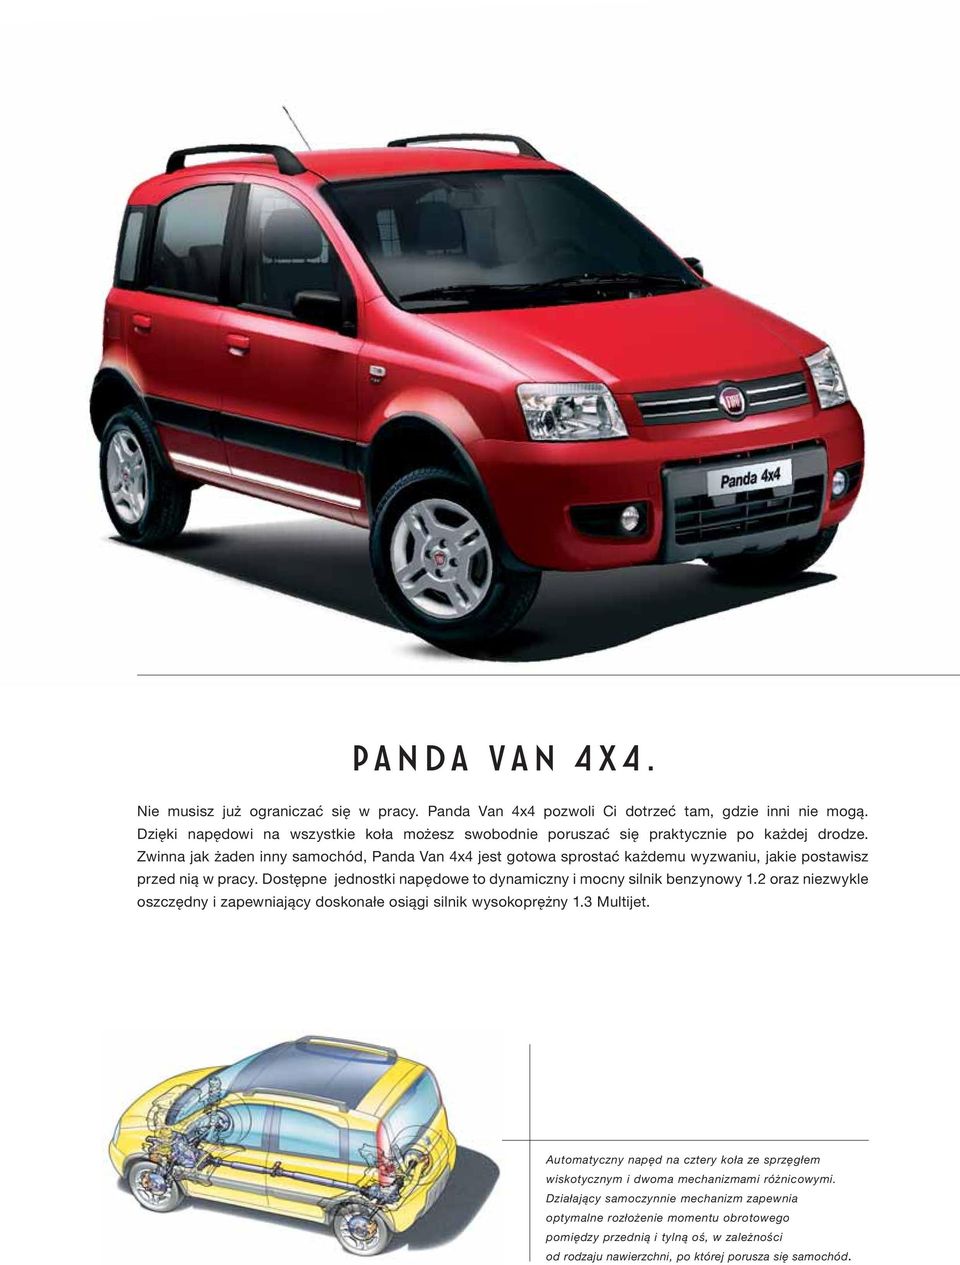 Zwinna jak żaden inny samochód, Panda Van 4x4 jest gotowa sprostać każdemu wyzwaniu, jakie postawisz przed nią w pracy. Dostępne jednostki napędowe to dynamiczny i mocny silnik benzynowy 1.